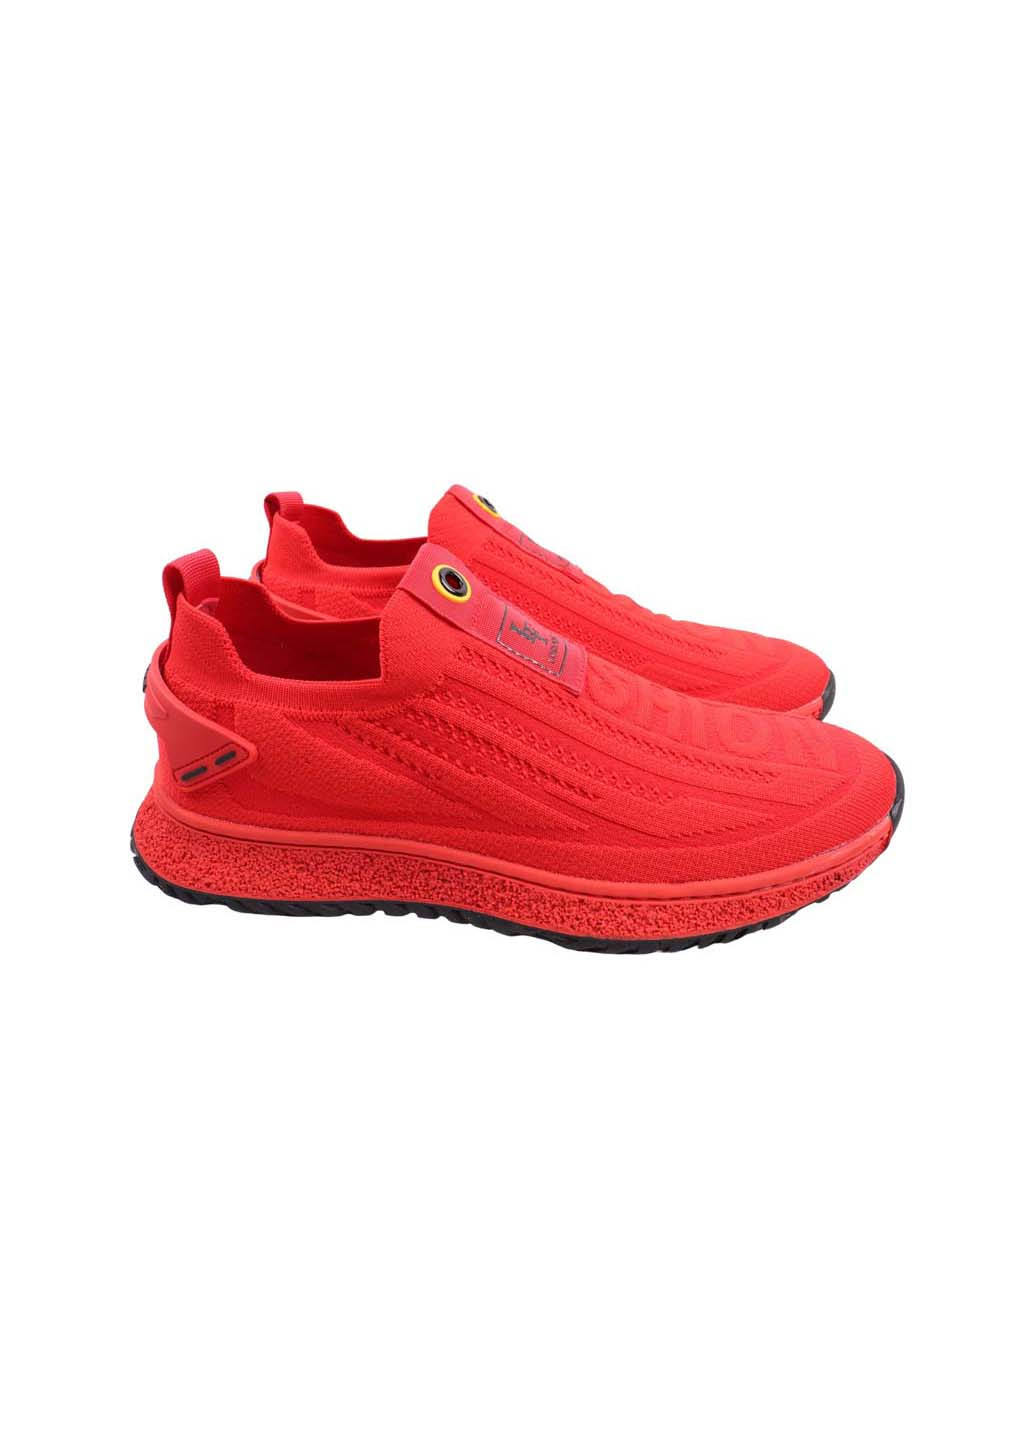 Червоні кросівки Lifexpert 1340-23LK